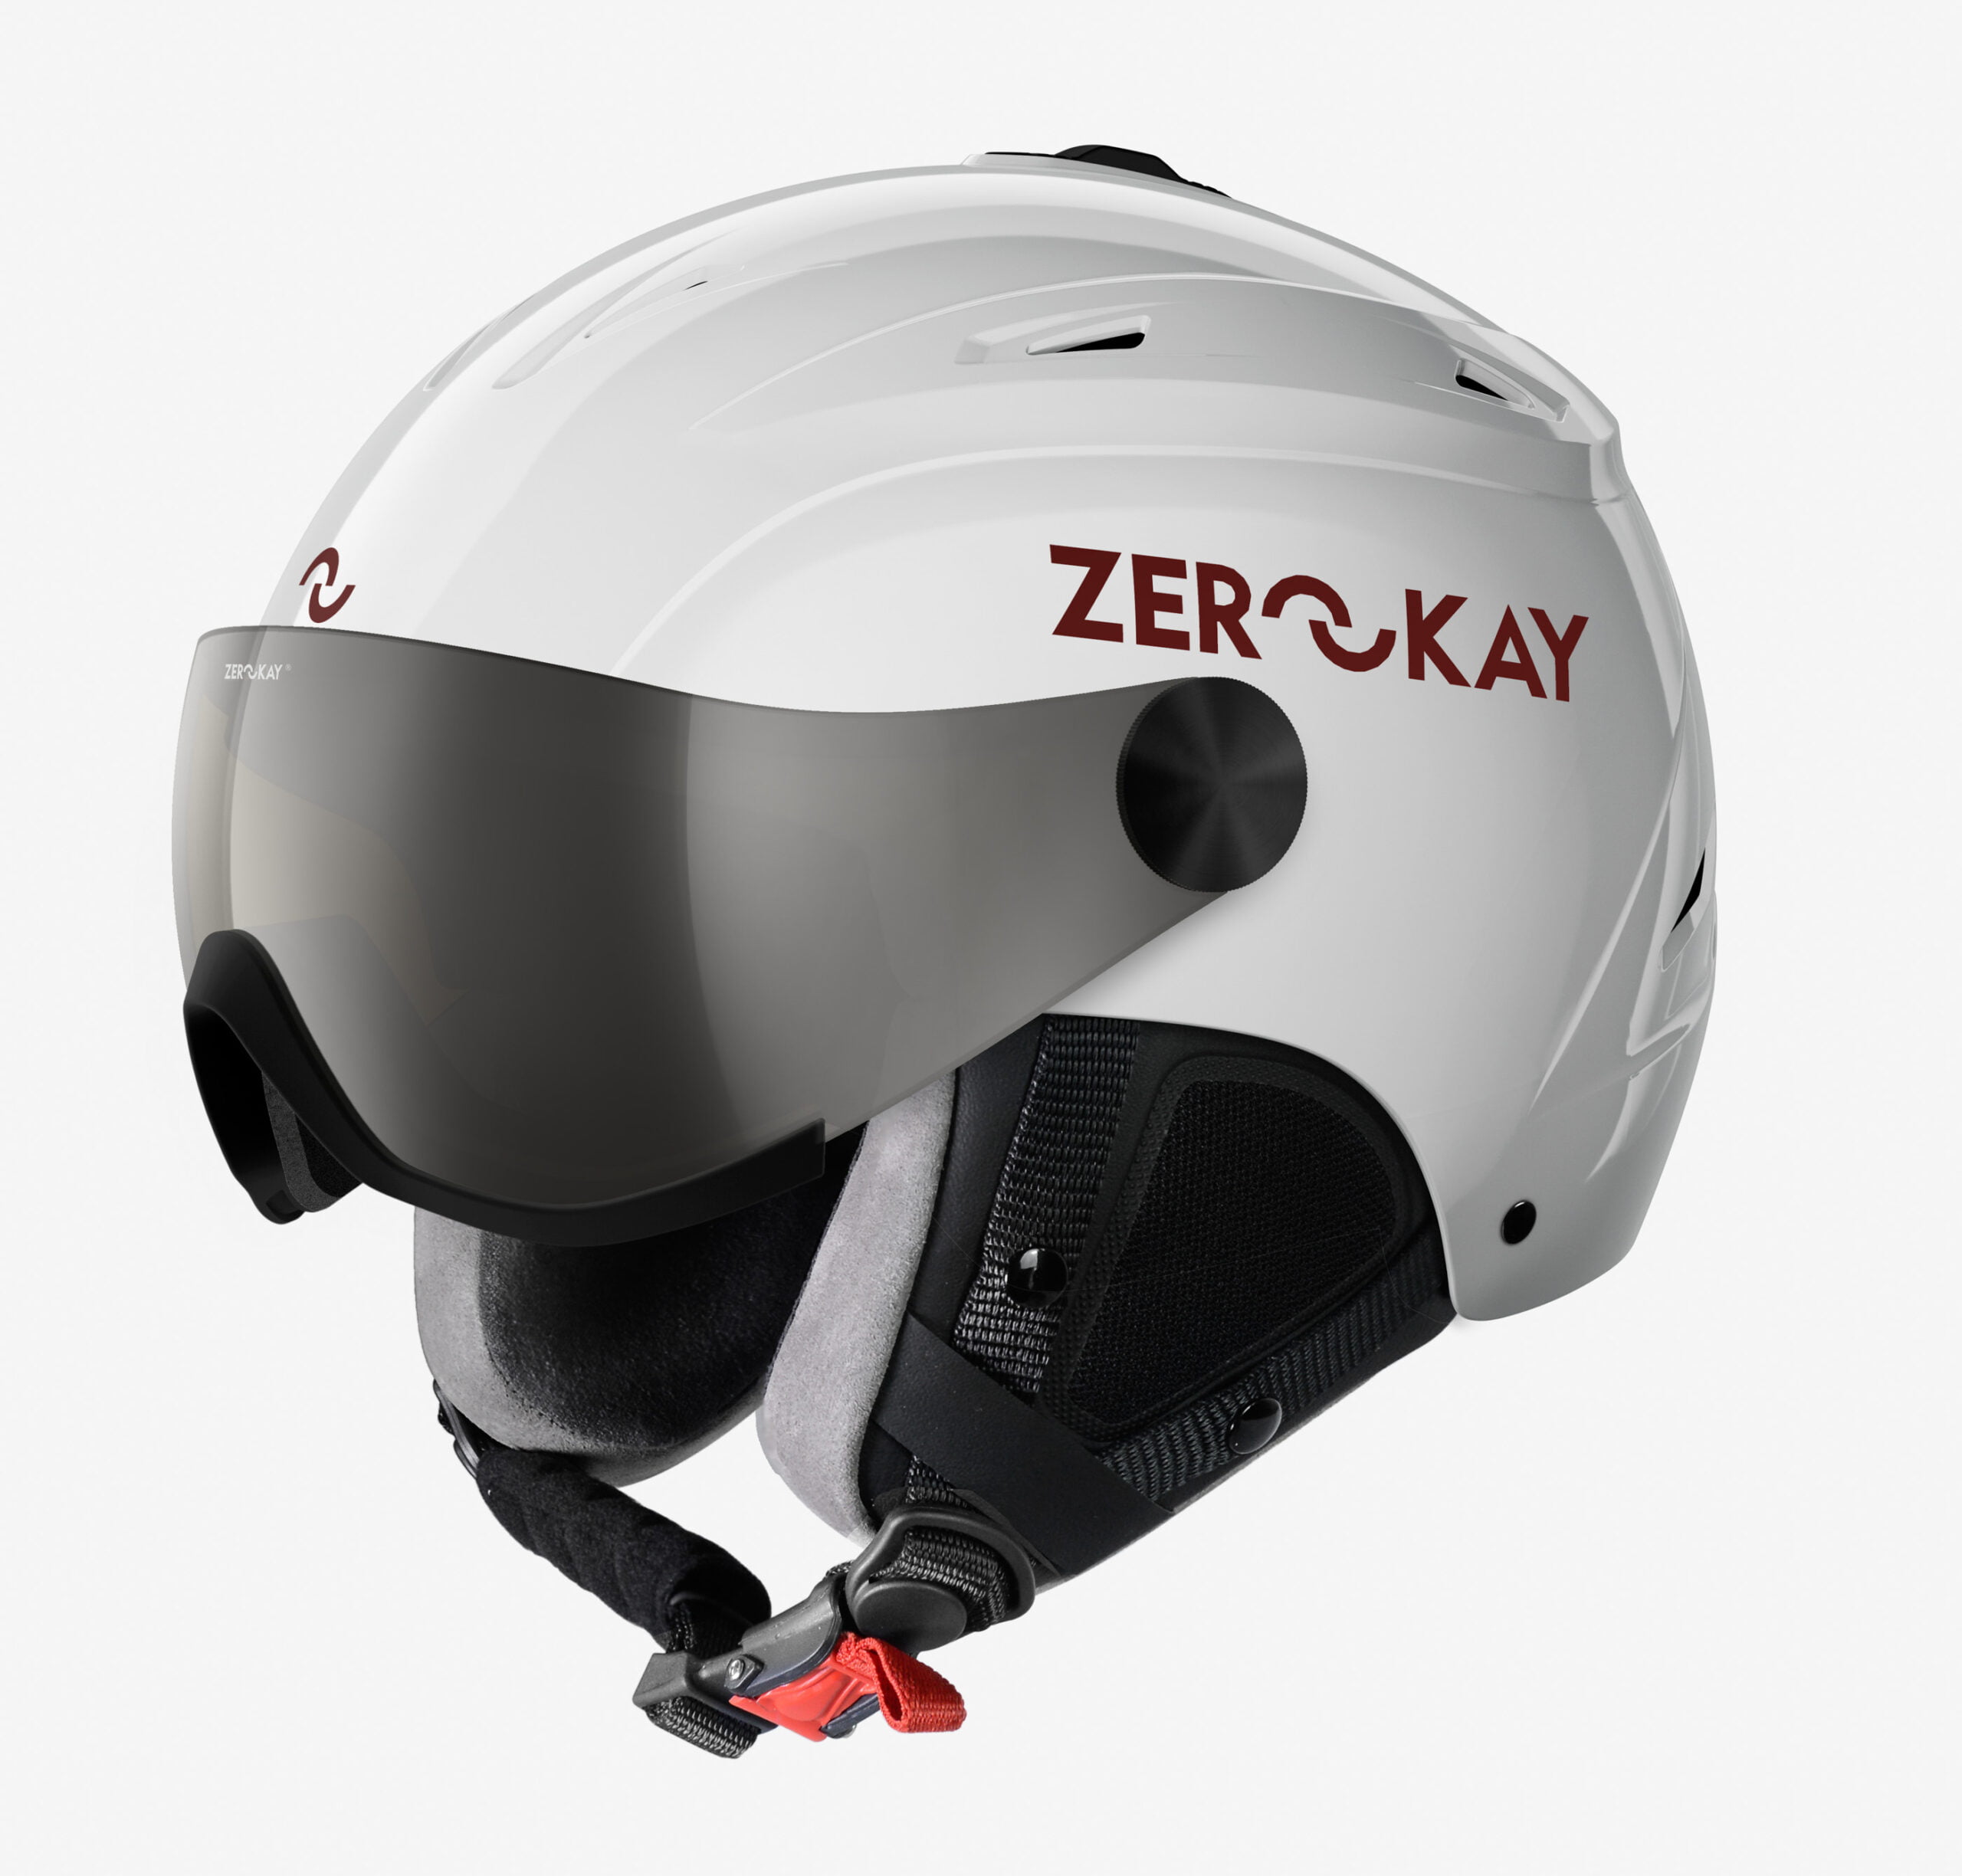 Visor ski helmet white by zerokay